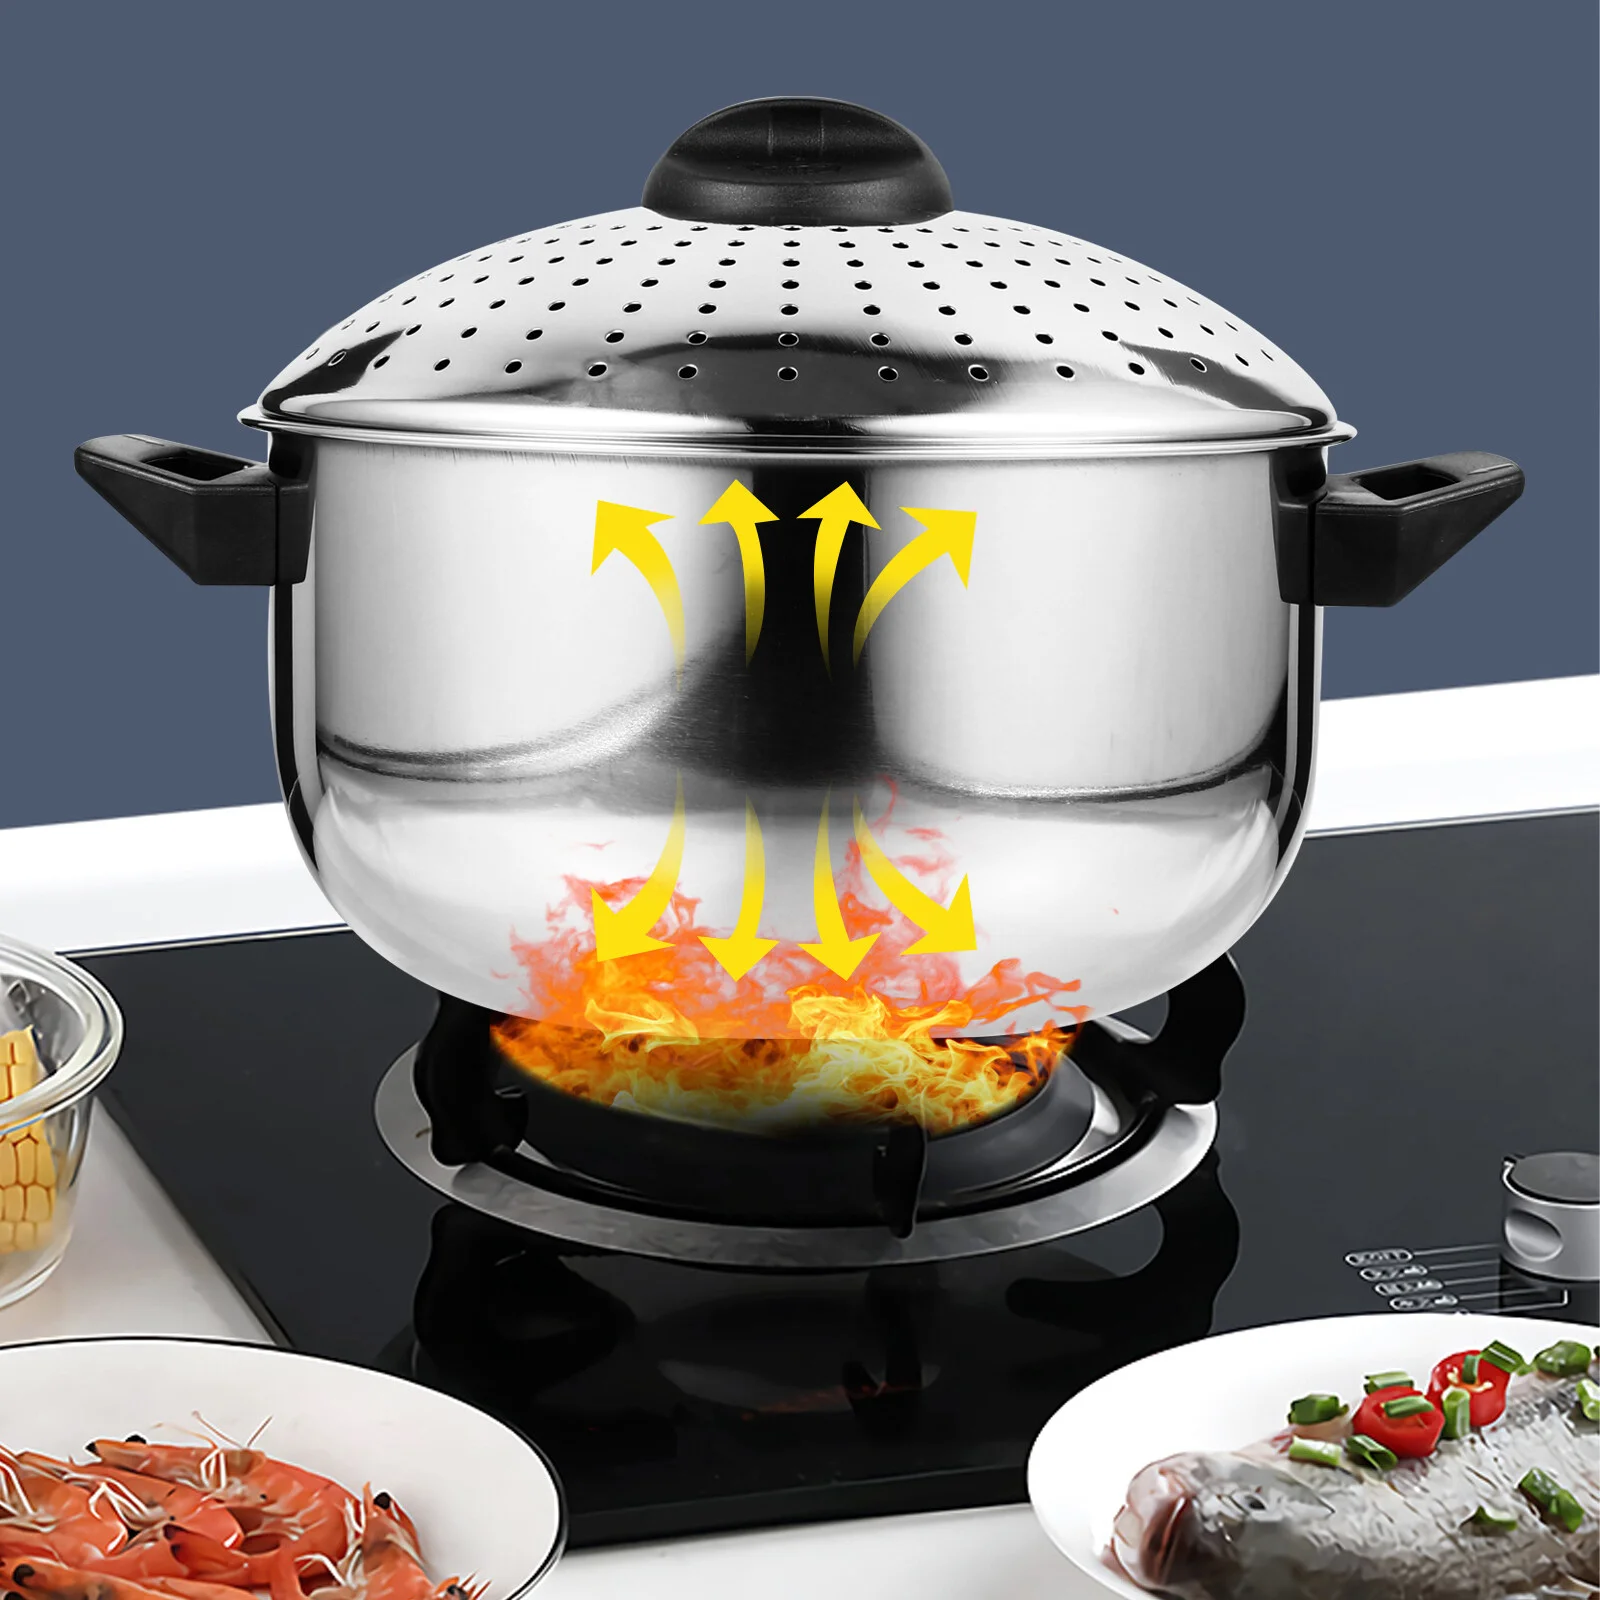 

Крышка для кастрюли, лапши, кухонная утварь для приготовления пищи в Корейском стиле, посуда для супа из нержавеющей стали, антипригарная утварь, высокая температура